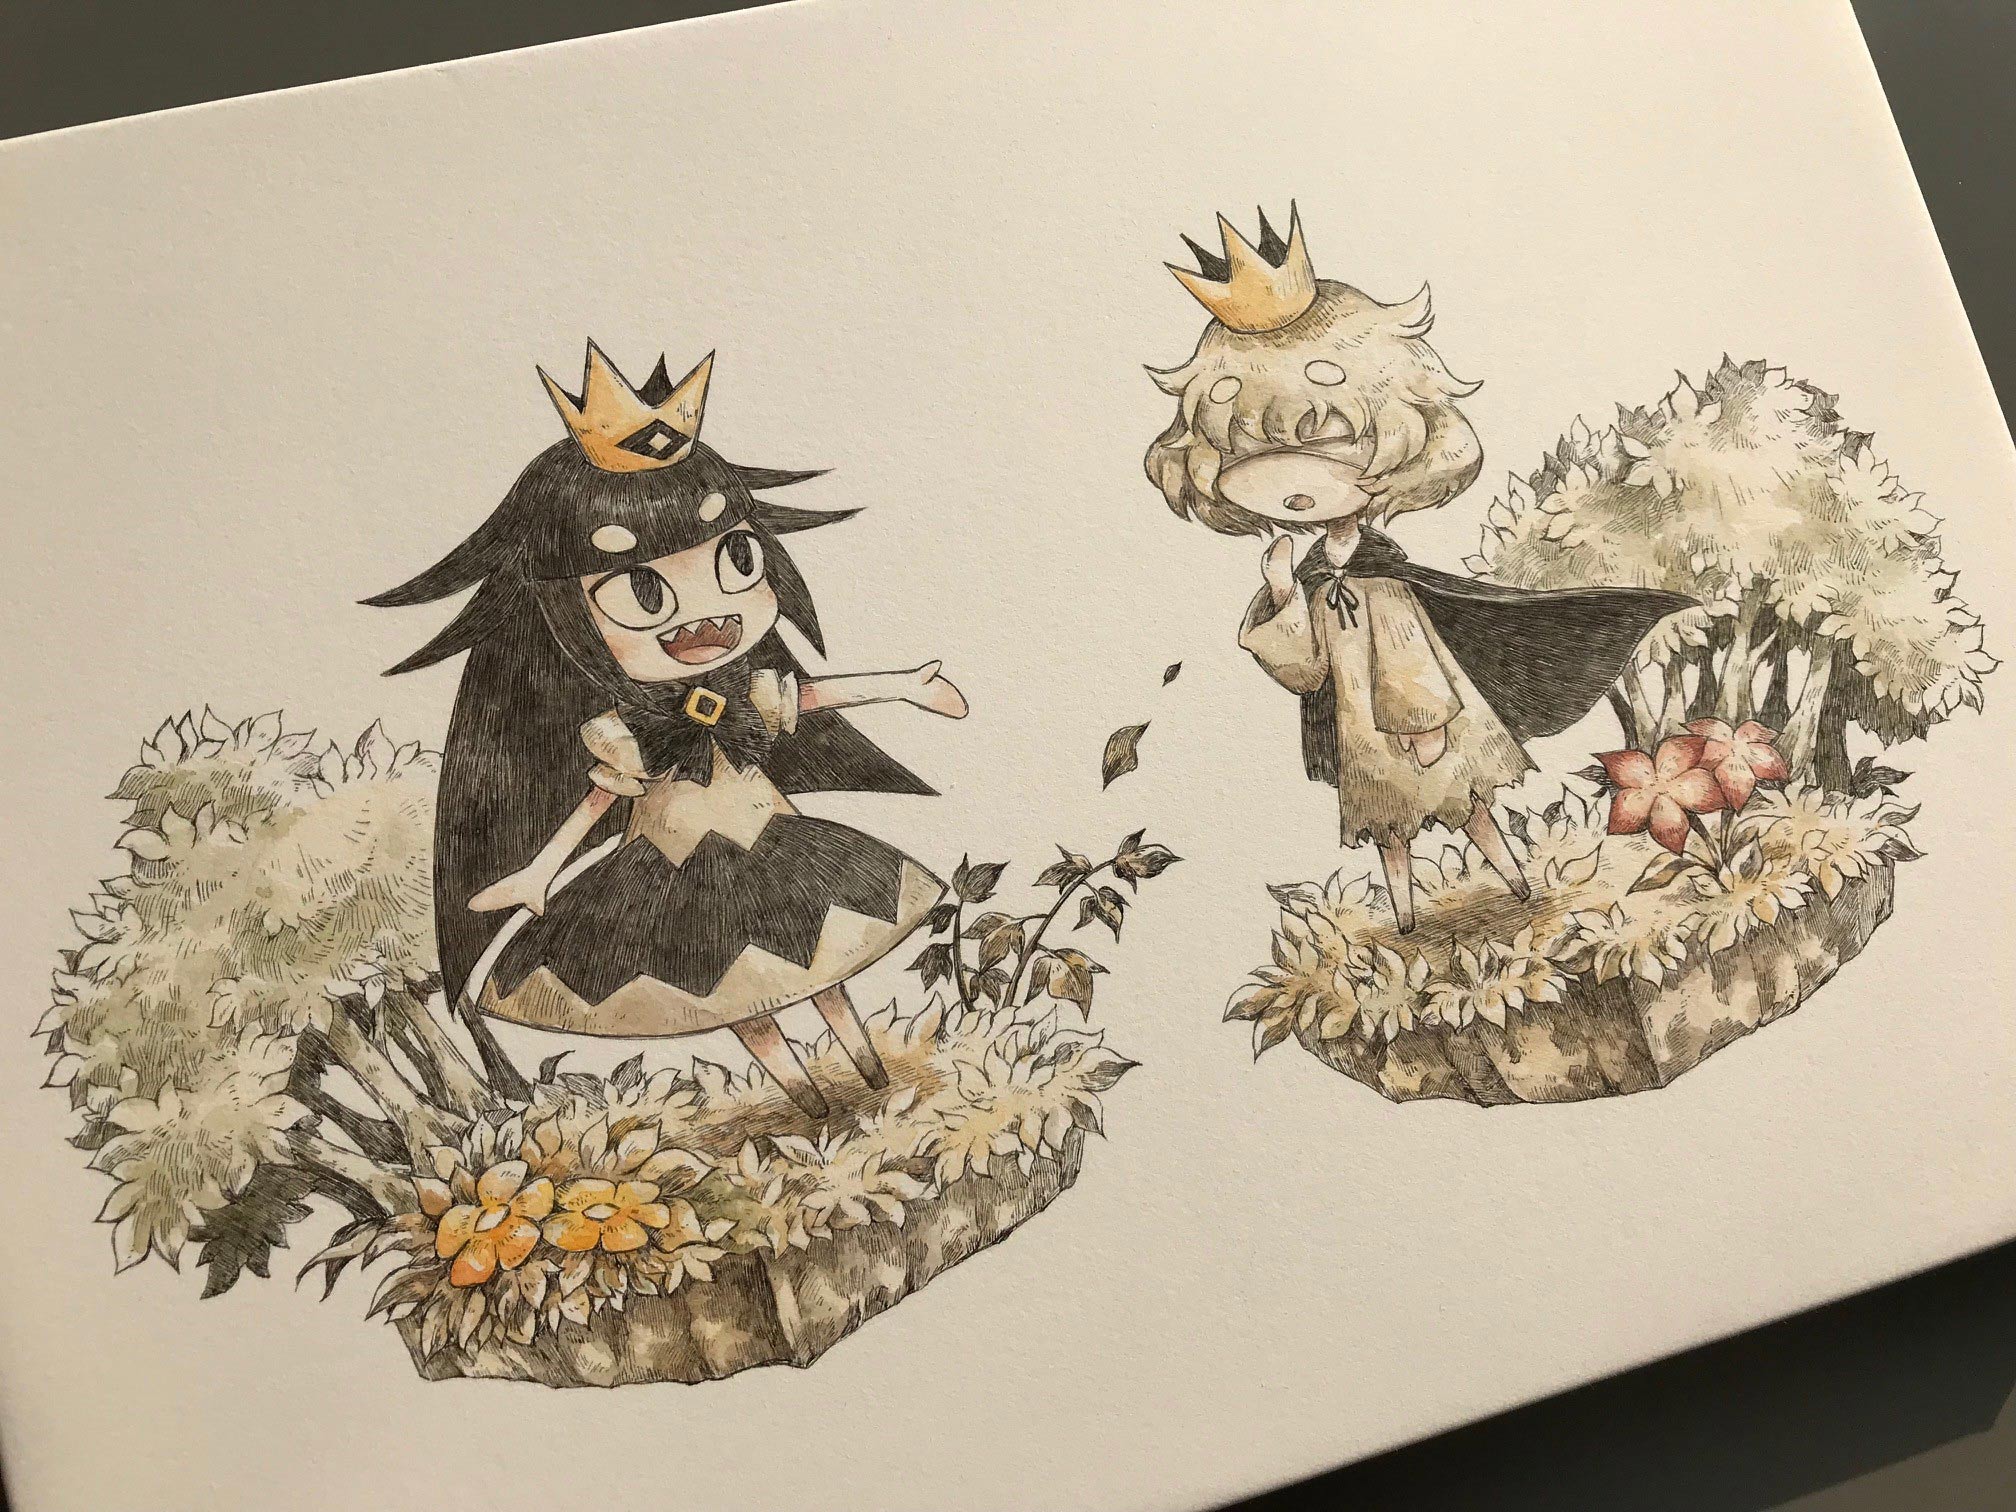 嘘つき姫と盲目王子 公式サイトのイラスト原画をツイート 日本一